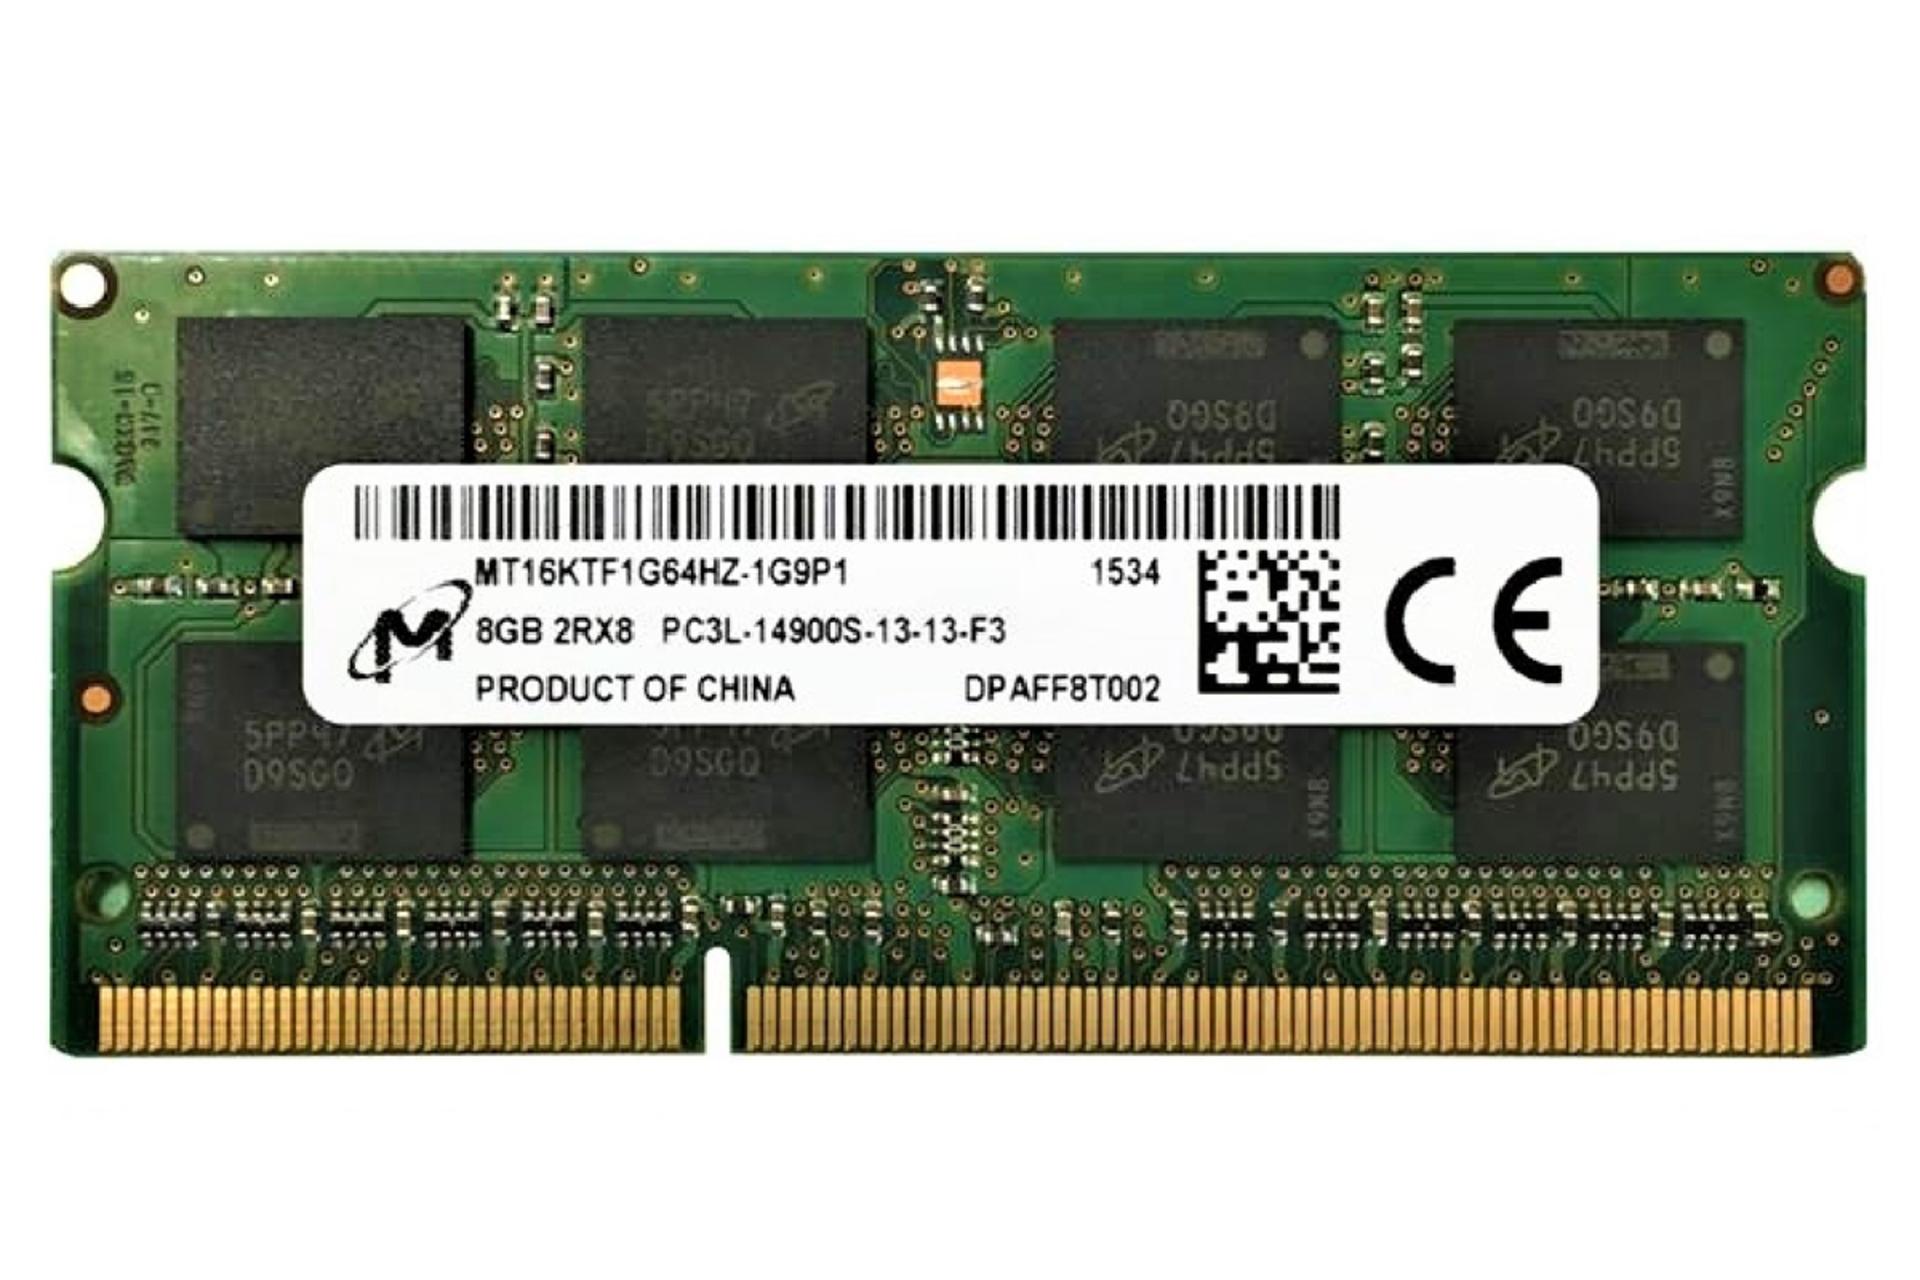 رم مایکرون MT16KTF1G64HZ-1G9P1 ظرفیت 8 گیگابایت از نوع DDR3L-1866